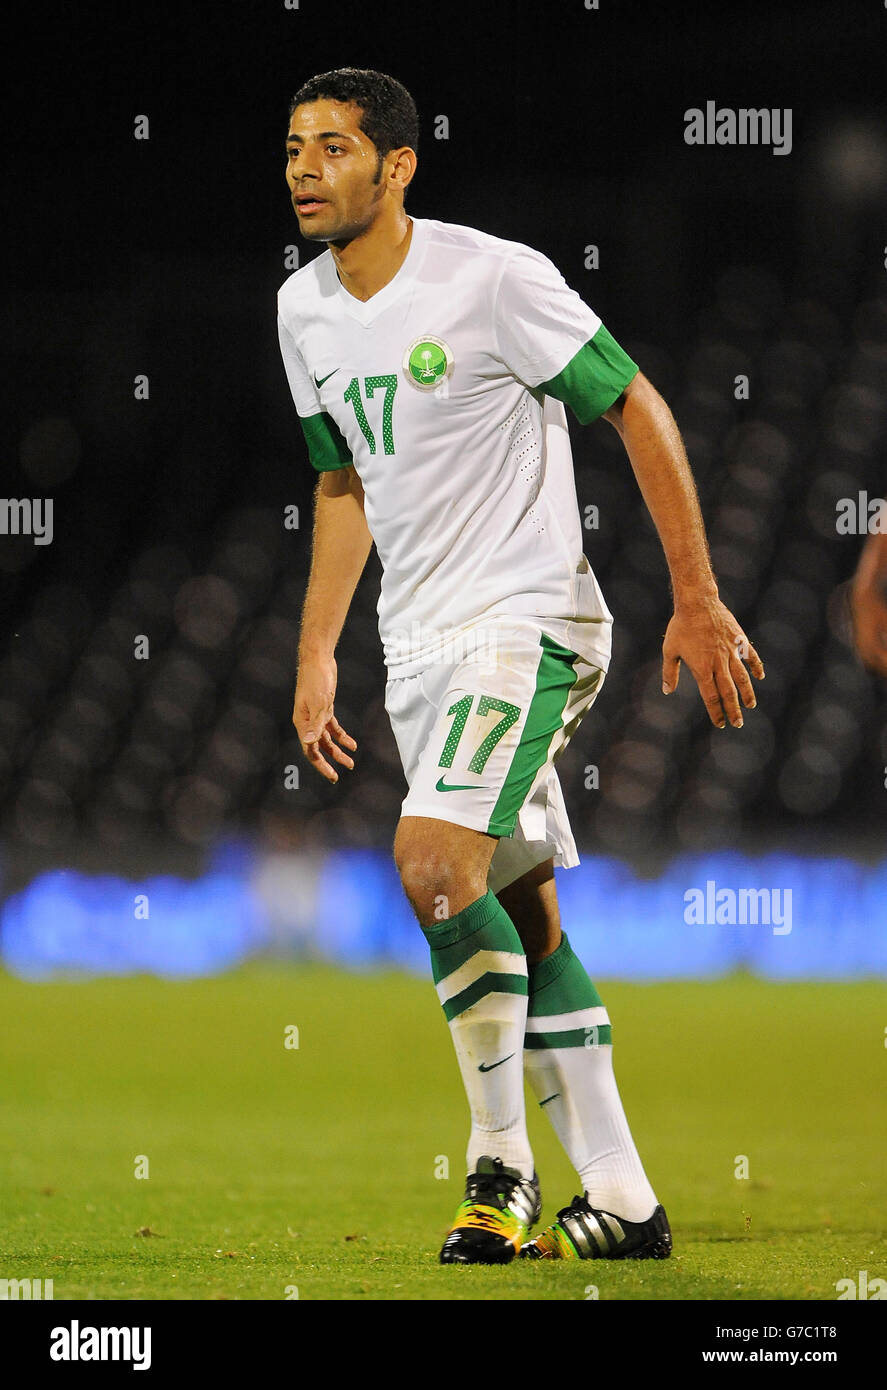 Soccer - International Friendly - Saudi Arabia v Australia - Craven Cottage. Taisir Al Jassim, Saudi Arabia Stock Photo